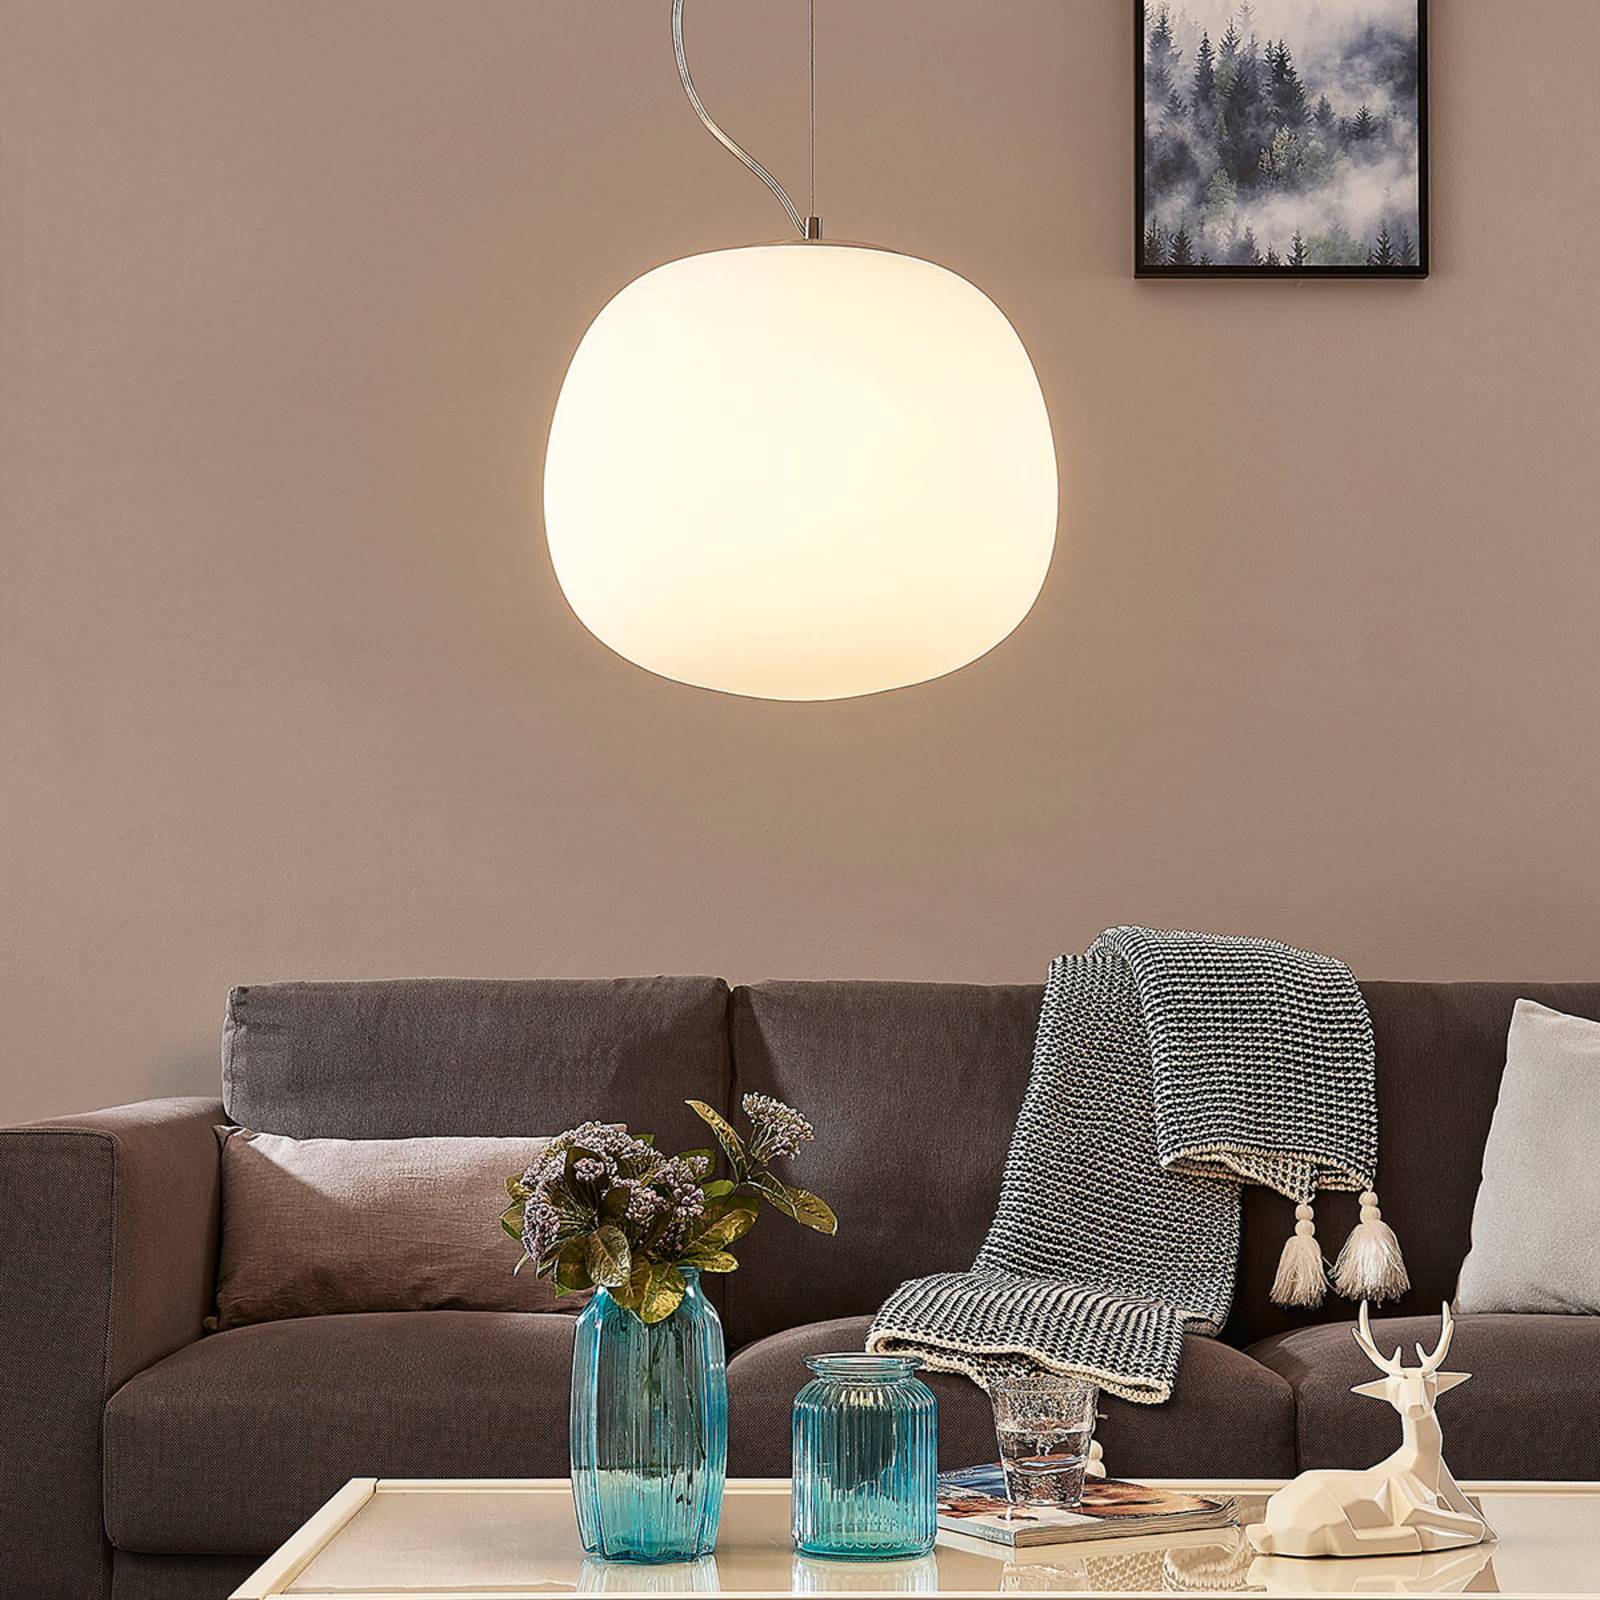 E-shop Sklená závesná lampa Ginevra, okrúhla, biela 38 cm